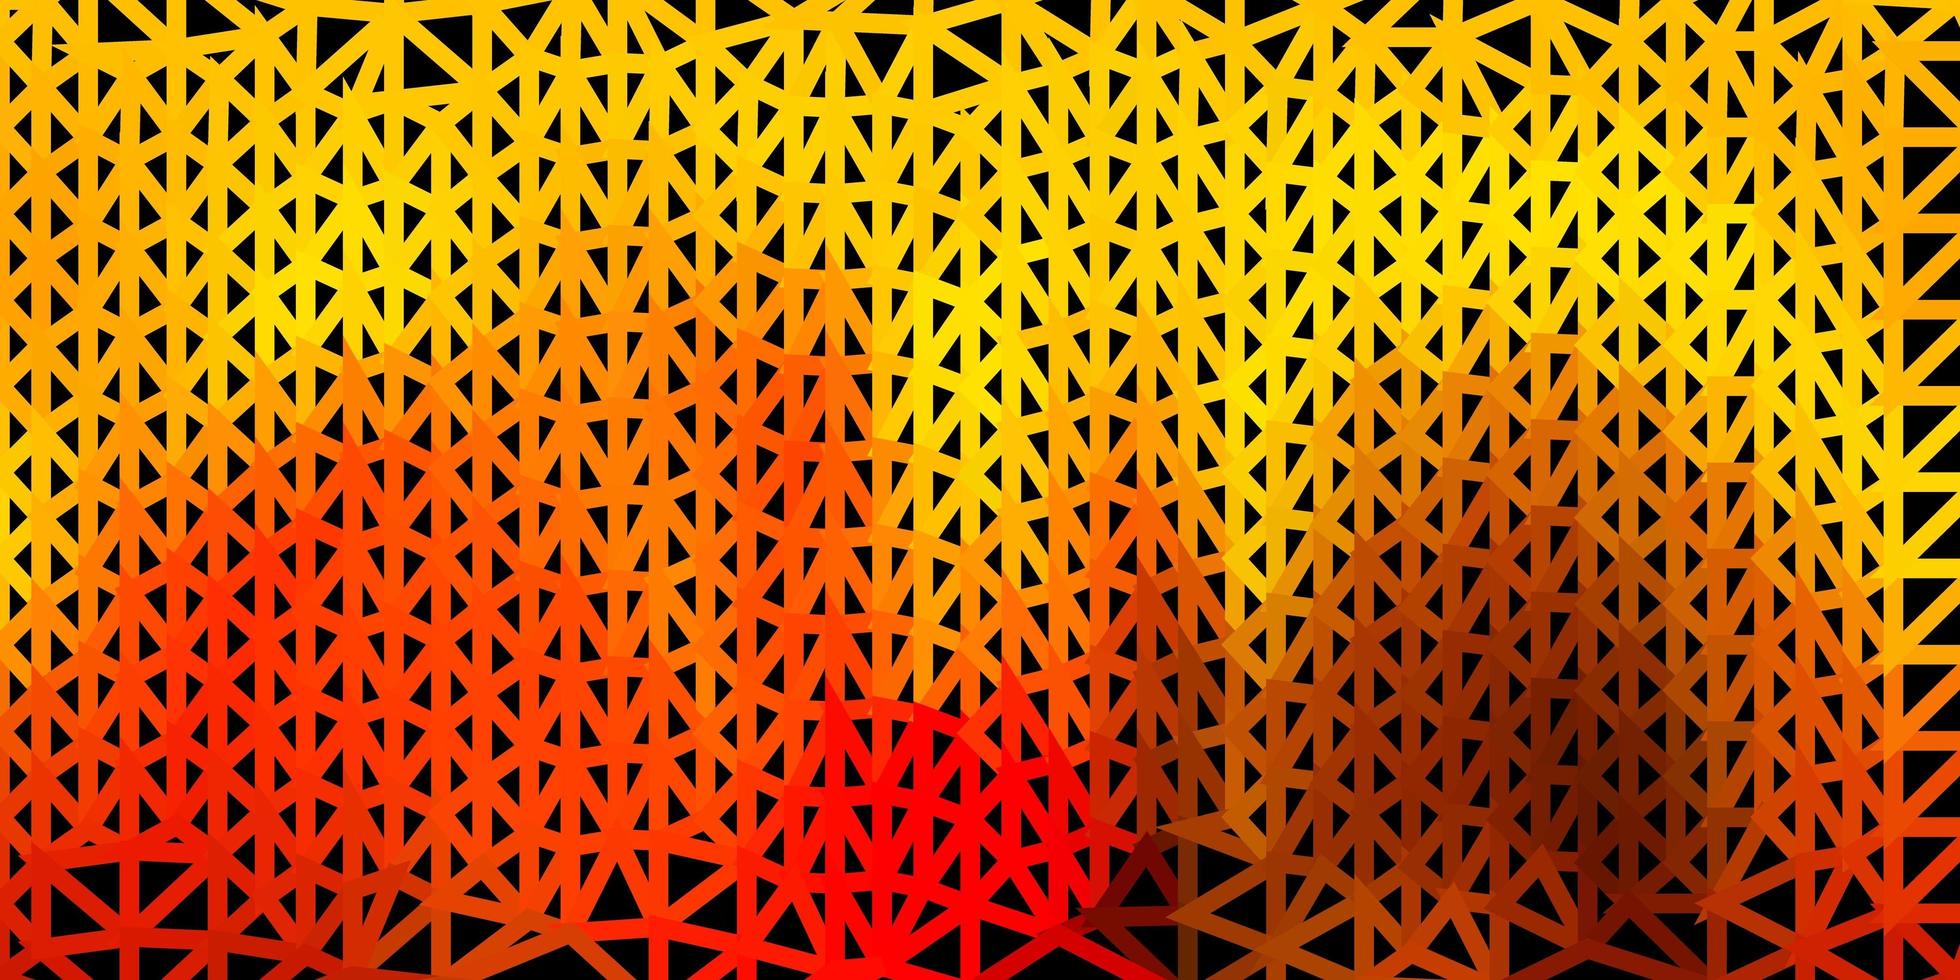 papel de parede poligonal geométrico de vetor vermelho e amarelo claro.